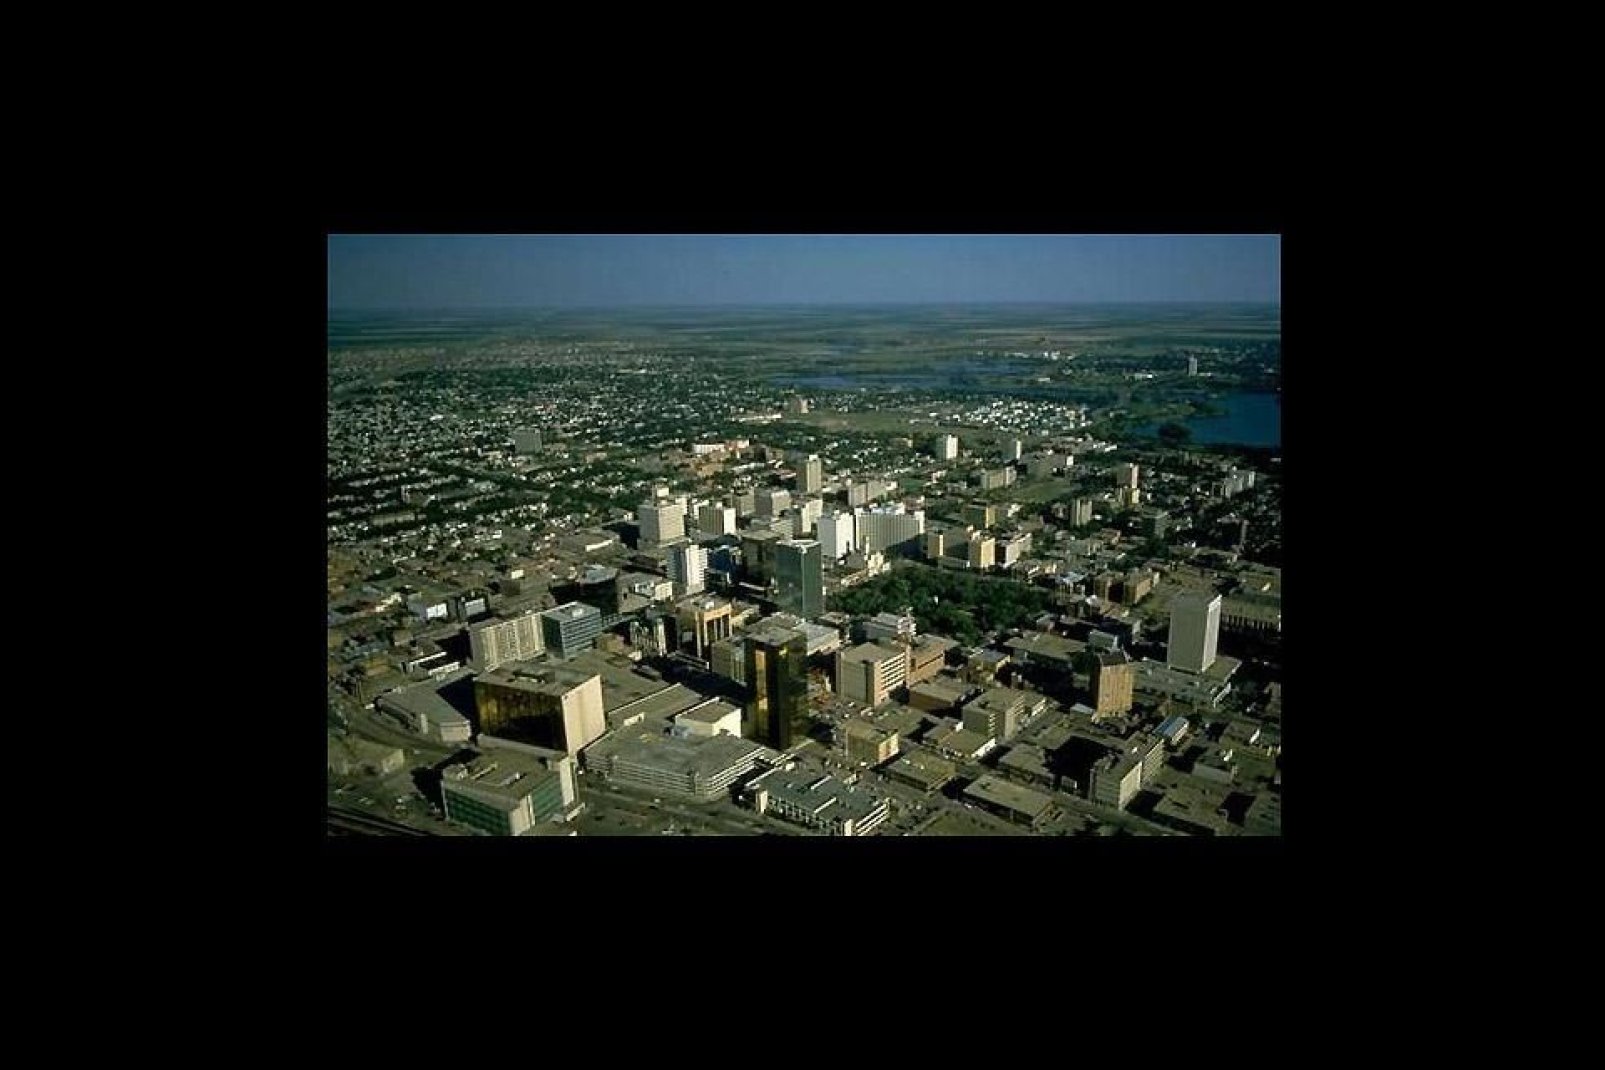 La capital de Saskatchewan es una ciudad pequeña pero dinámica que recuerda algunas ciudades inglesas.